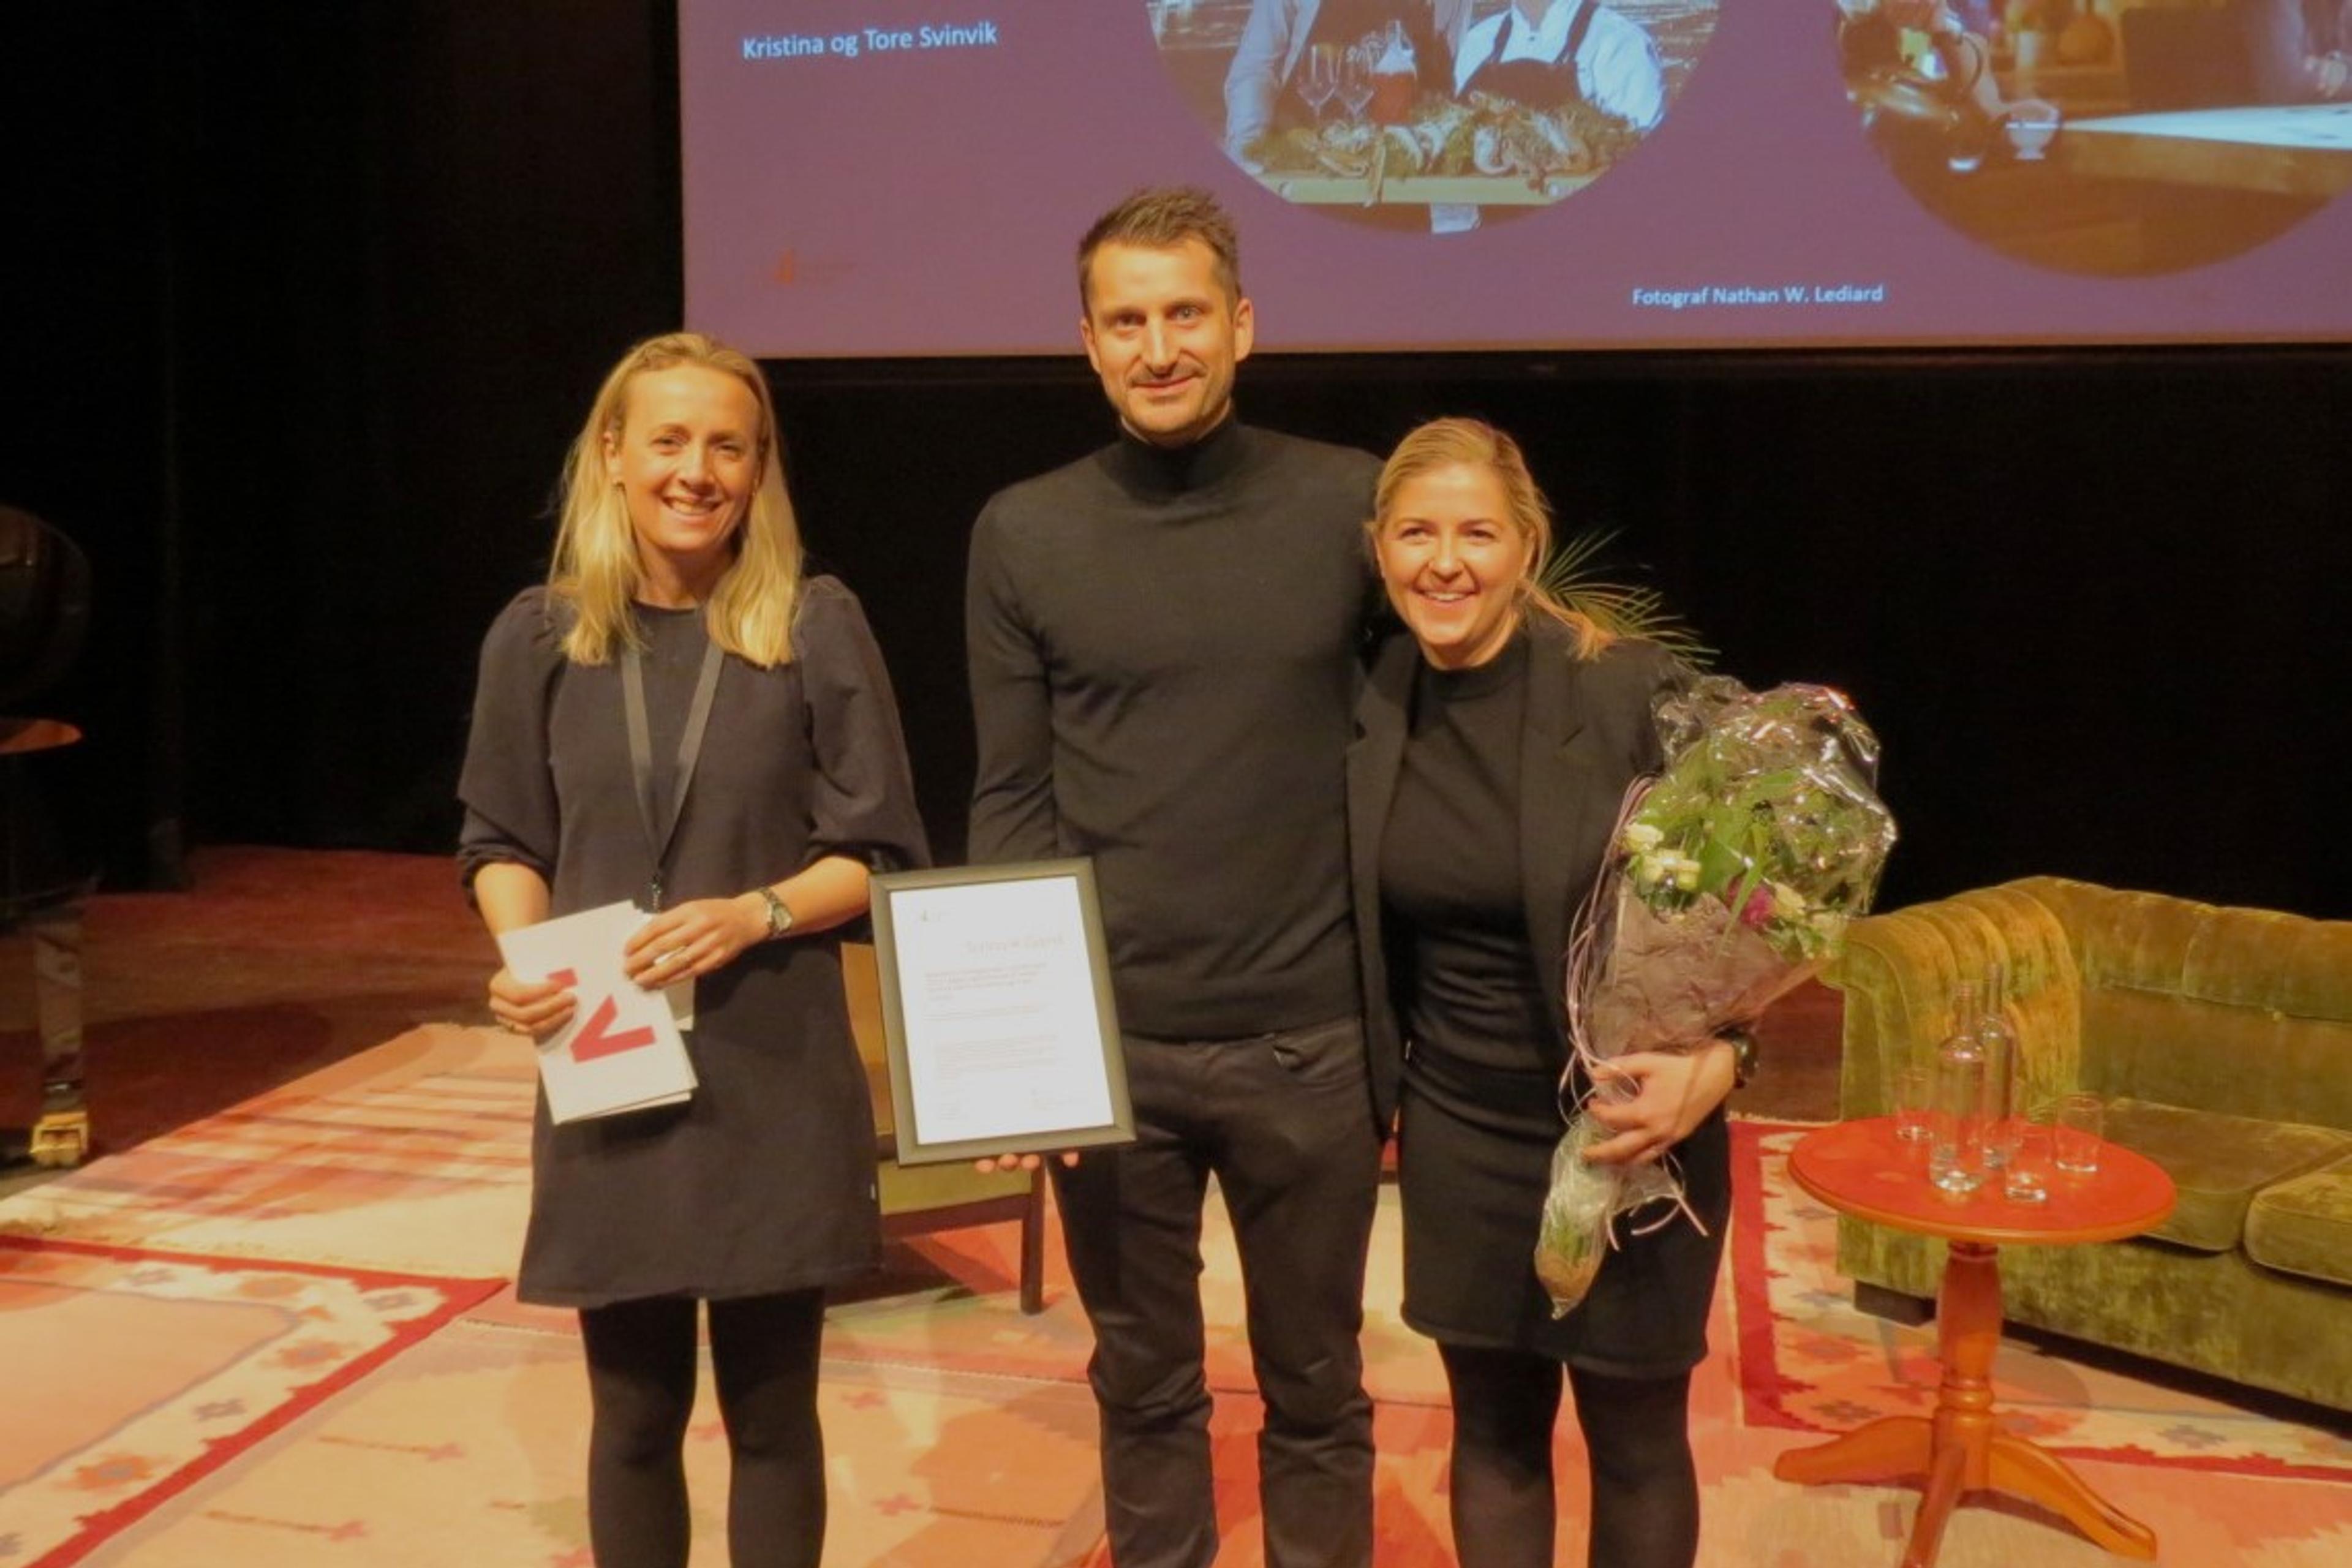 Ei kvinne og en mann mottar diplom og blomster for BU-prisen av ei kvinne med talekort fra Innovasjon Norge i hendene